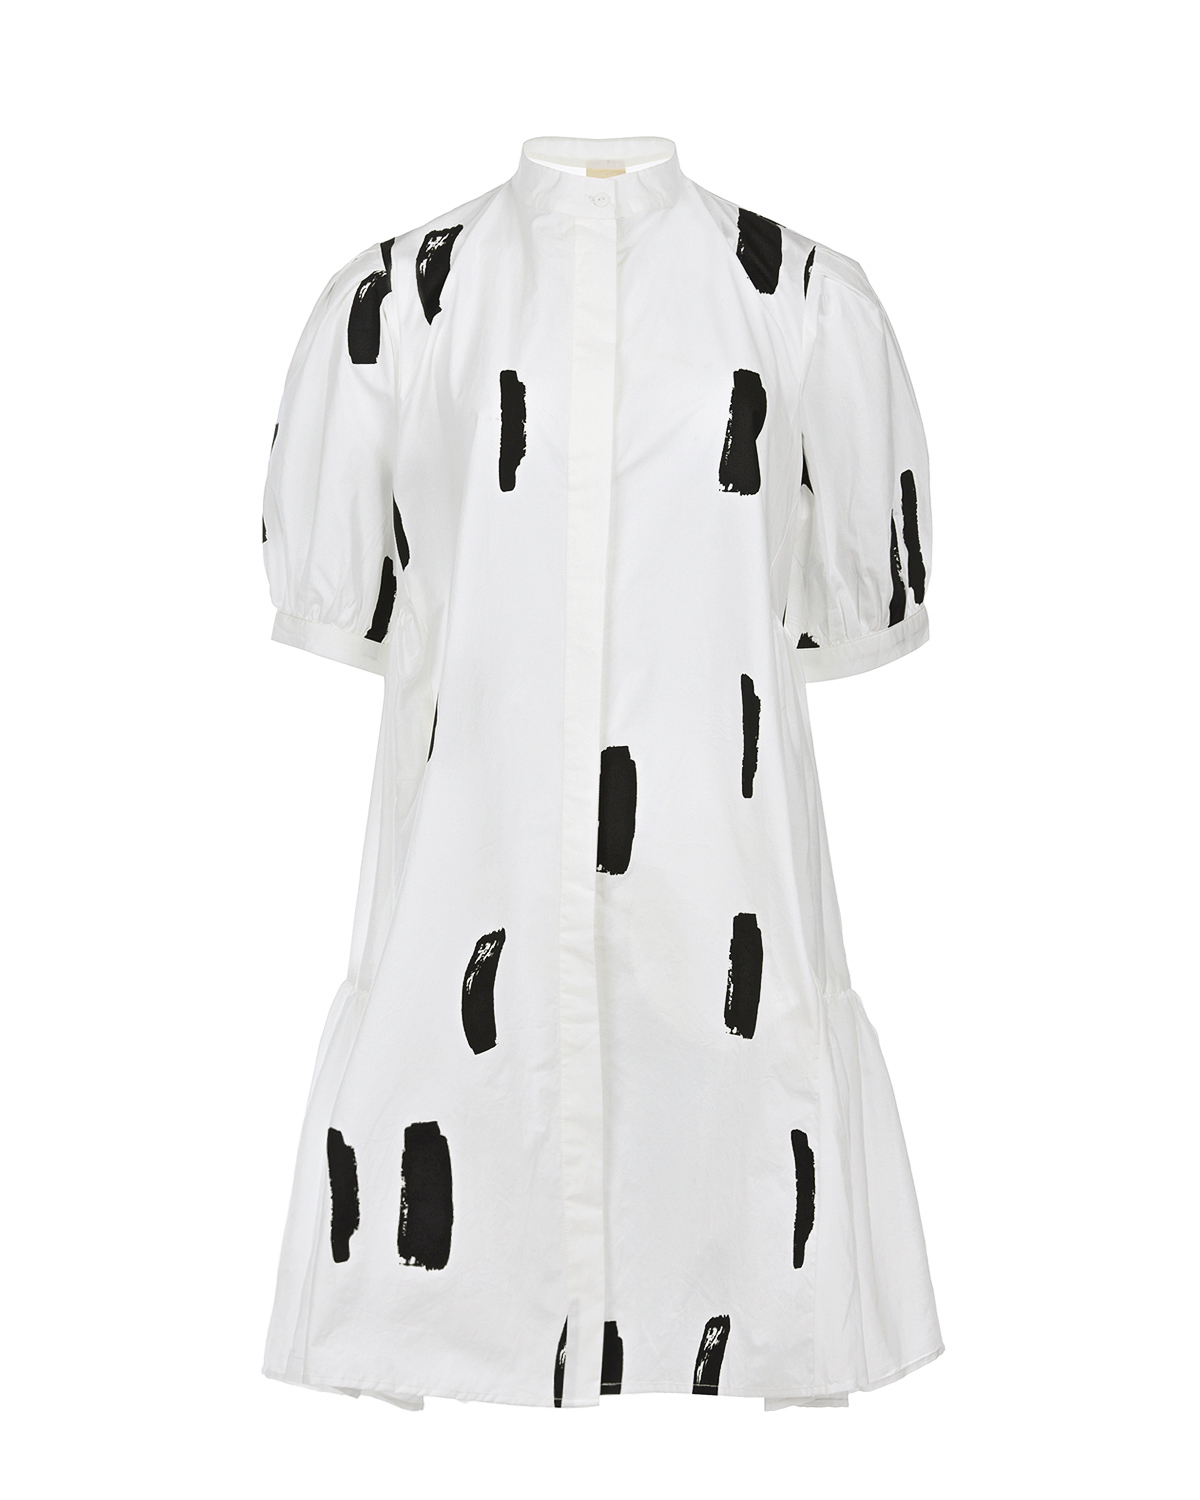 Платье-рубашка молочного цвета LOVE BIRDS, размер 40 - фото 1